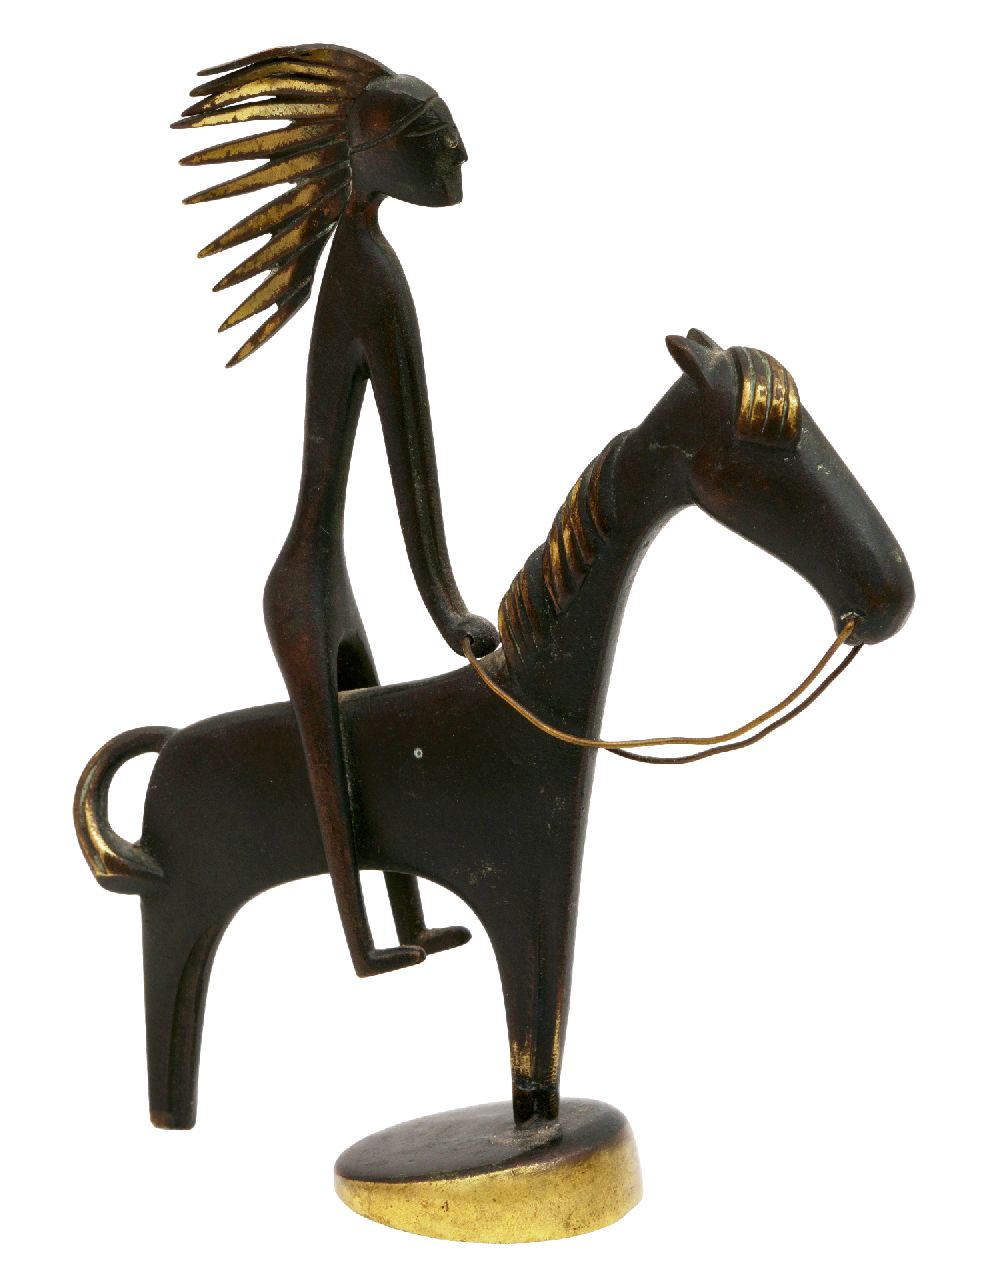 Karl Hagenauer | Indianer zu Pferd, Patiniertes Messing, 13,1 x 10,1 cm, zu datieren um 1950